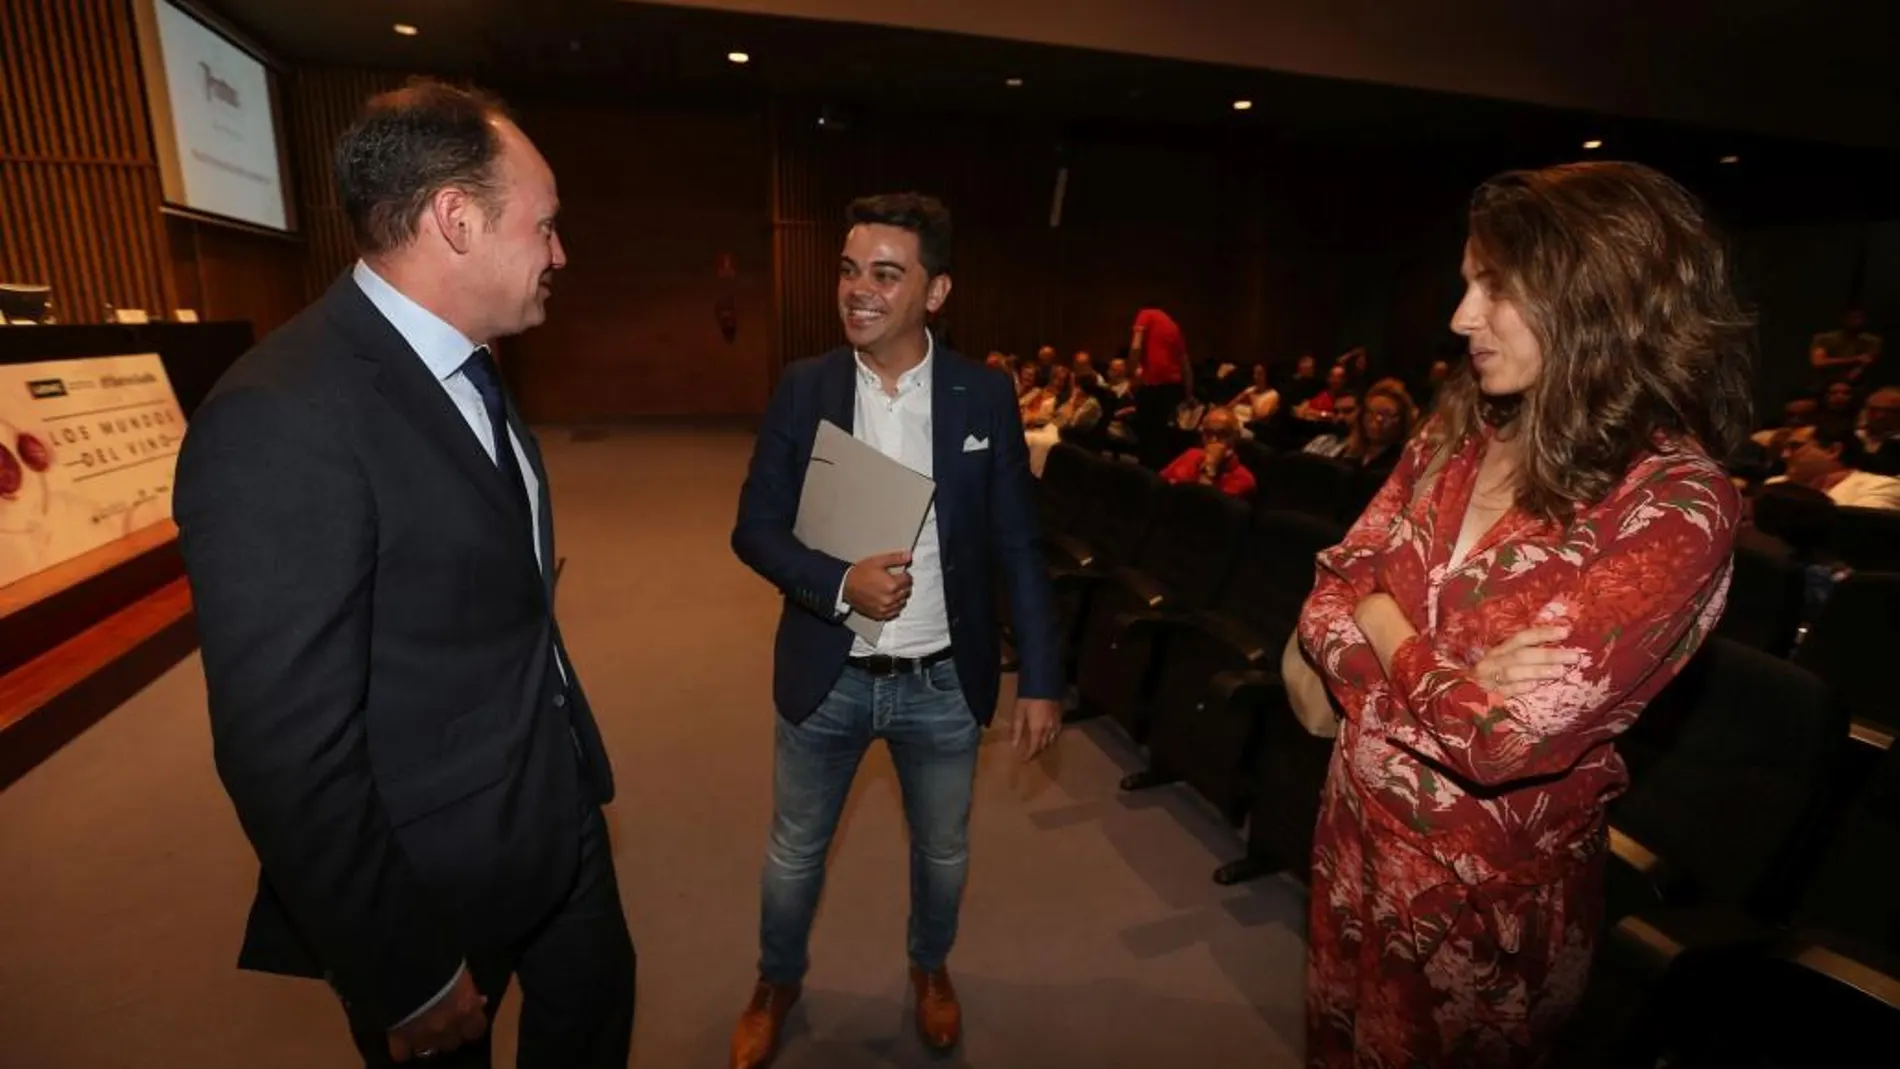 Pedro Ruiz y Carlos Villar, de Pago de Carraovejas y Protos, respectivamente, conversan en presencia de Martina Prieto, de Bodegas José Pariente